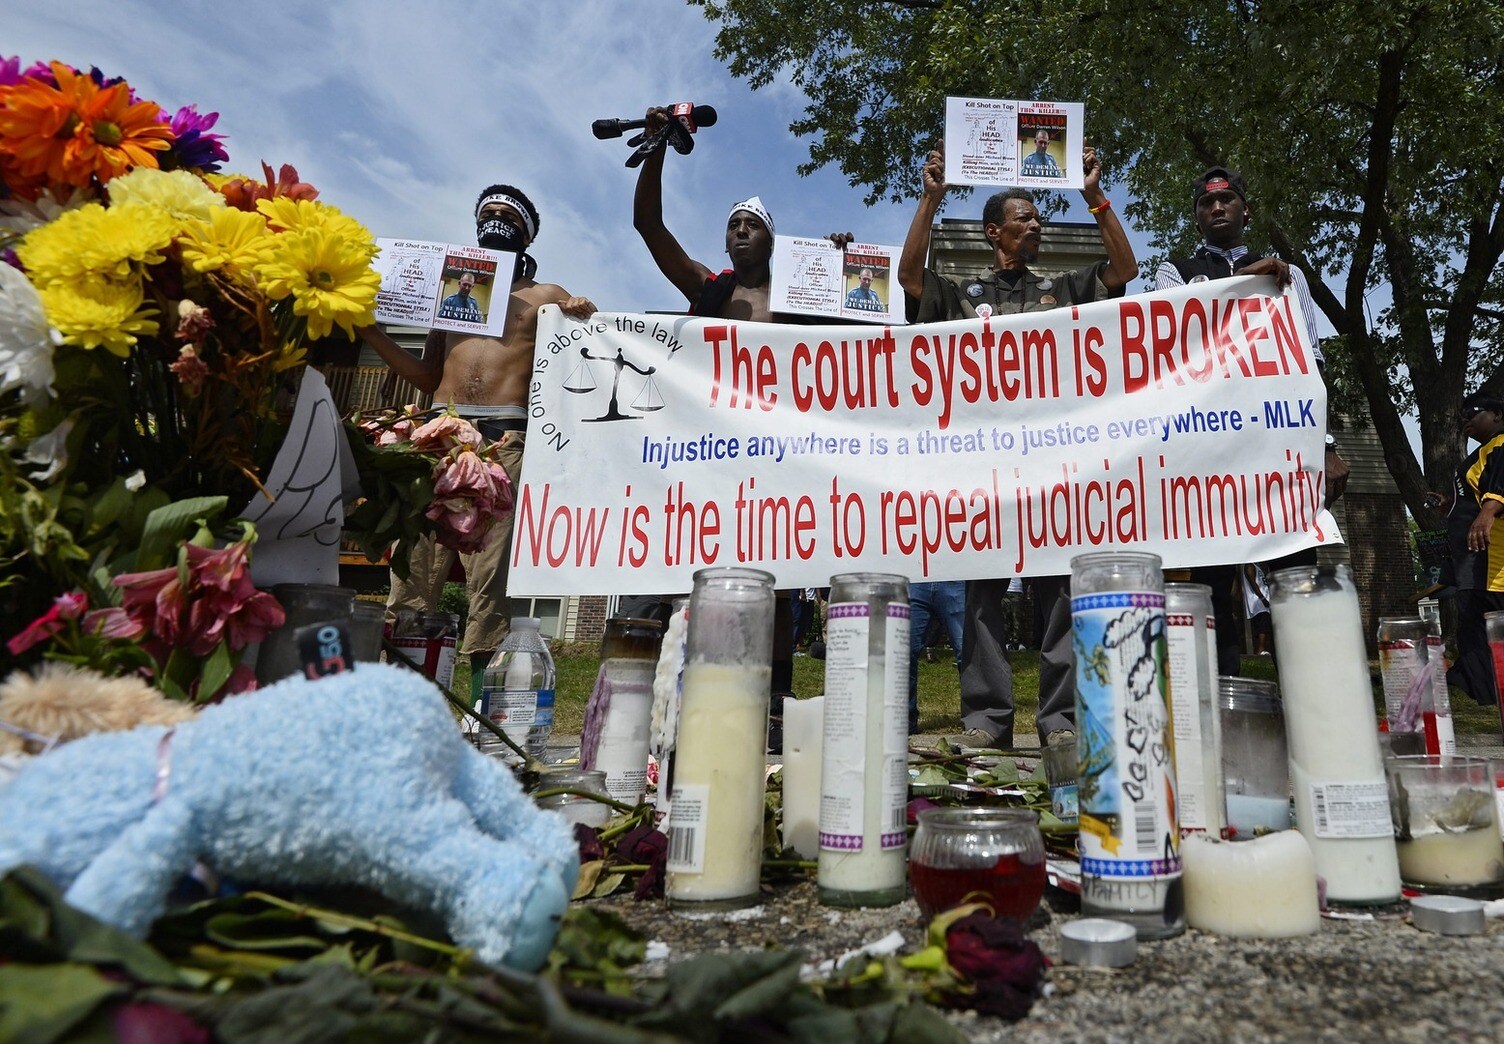 Minister van Justitie VS moet rust brengen in Ferguson